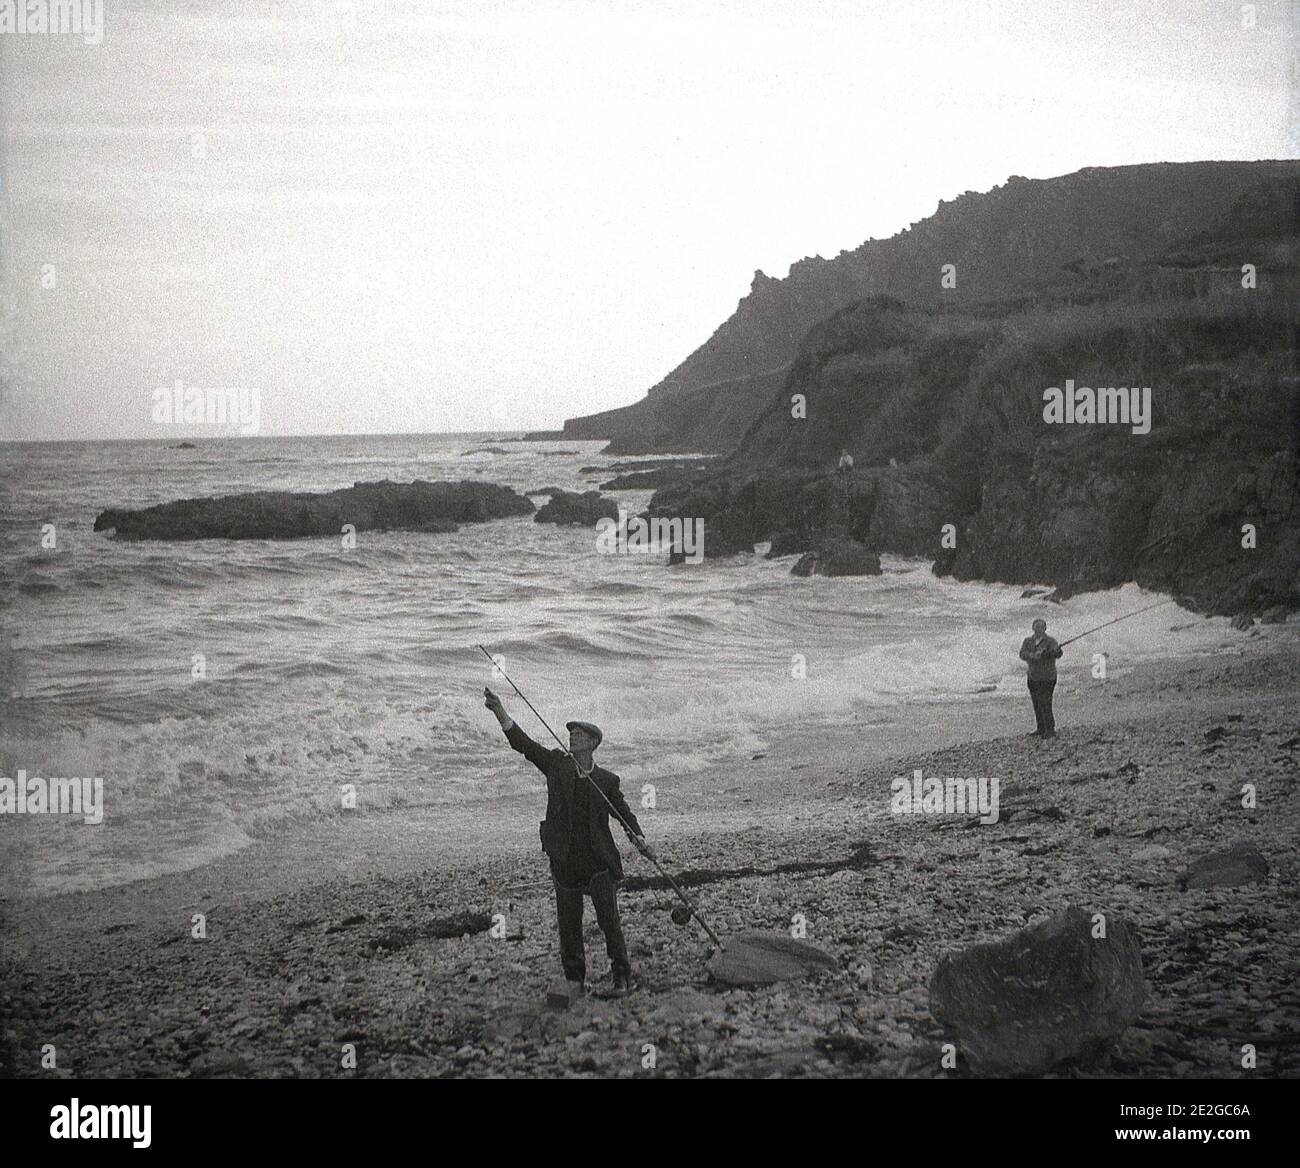 1960er Jahre, historisch, in einer felsigen Bucht am Meer, an einem steinigen Strand, zwei Männer in Watvögeln Seefischen, von einer Person in der Ferne sitzen auf den Klippen mit Blick auf die Bucht, England, Großbritannien beobachtet. Stockfoto